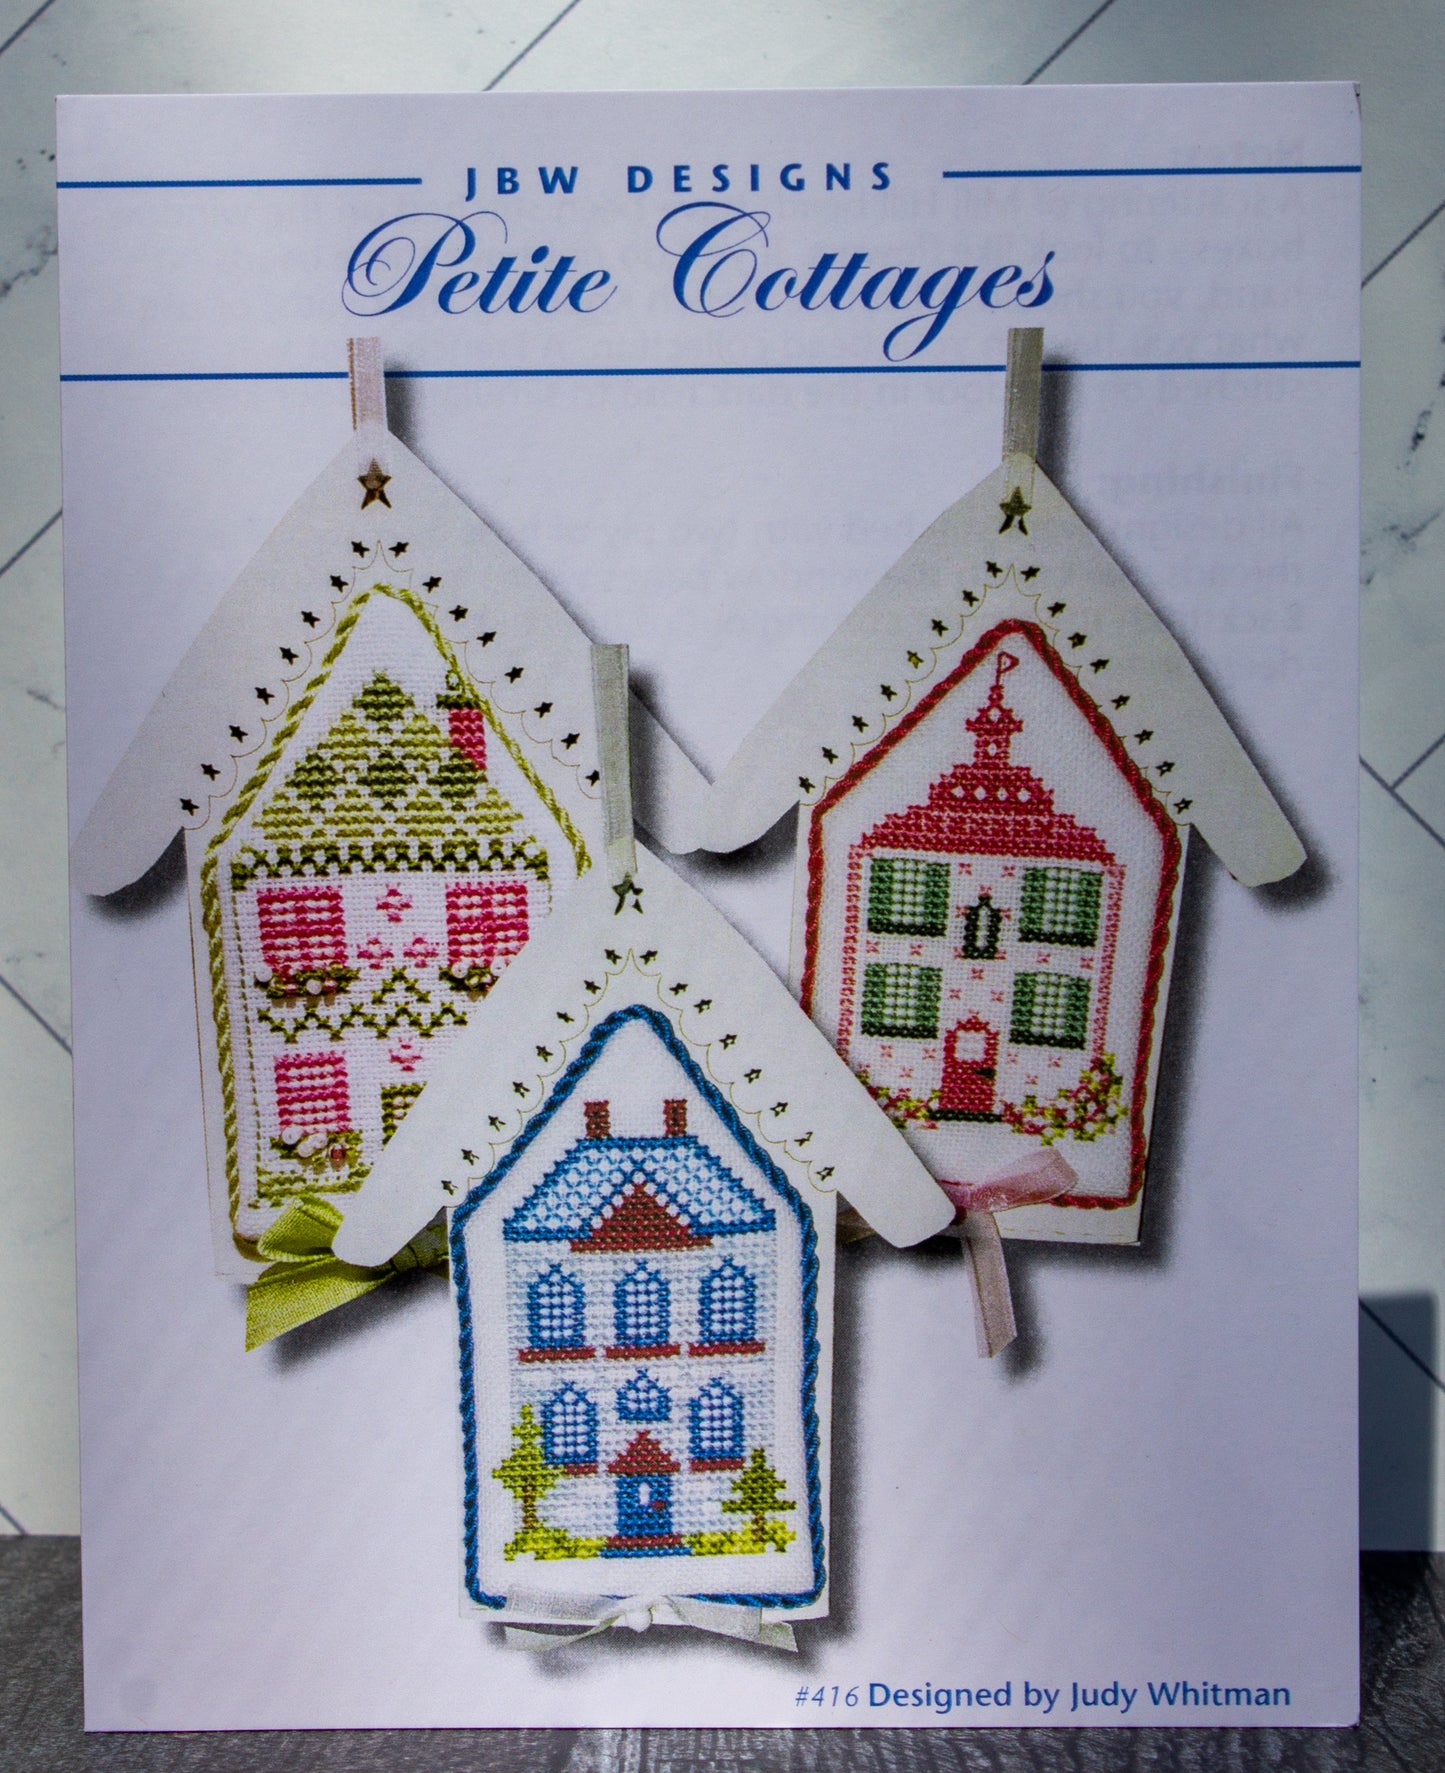 Petite Cottages